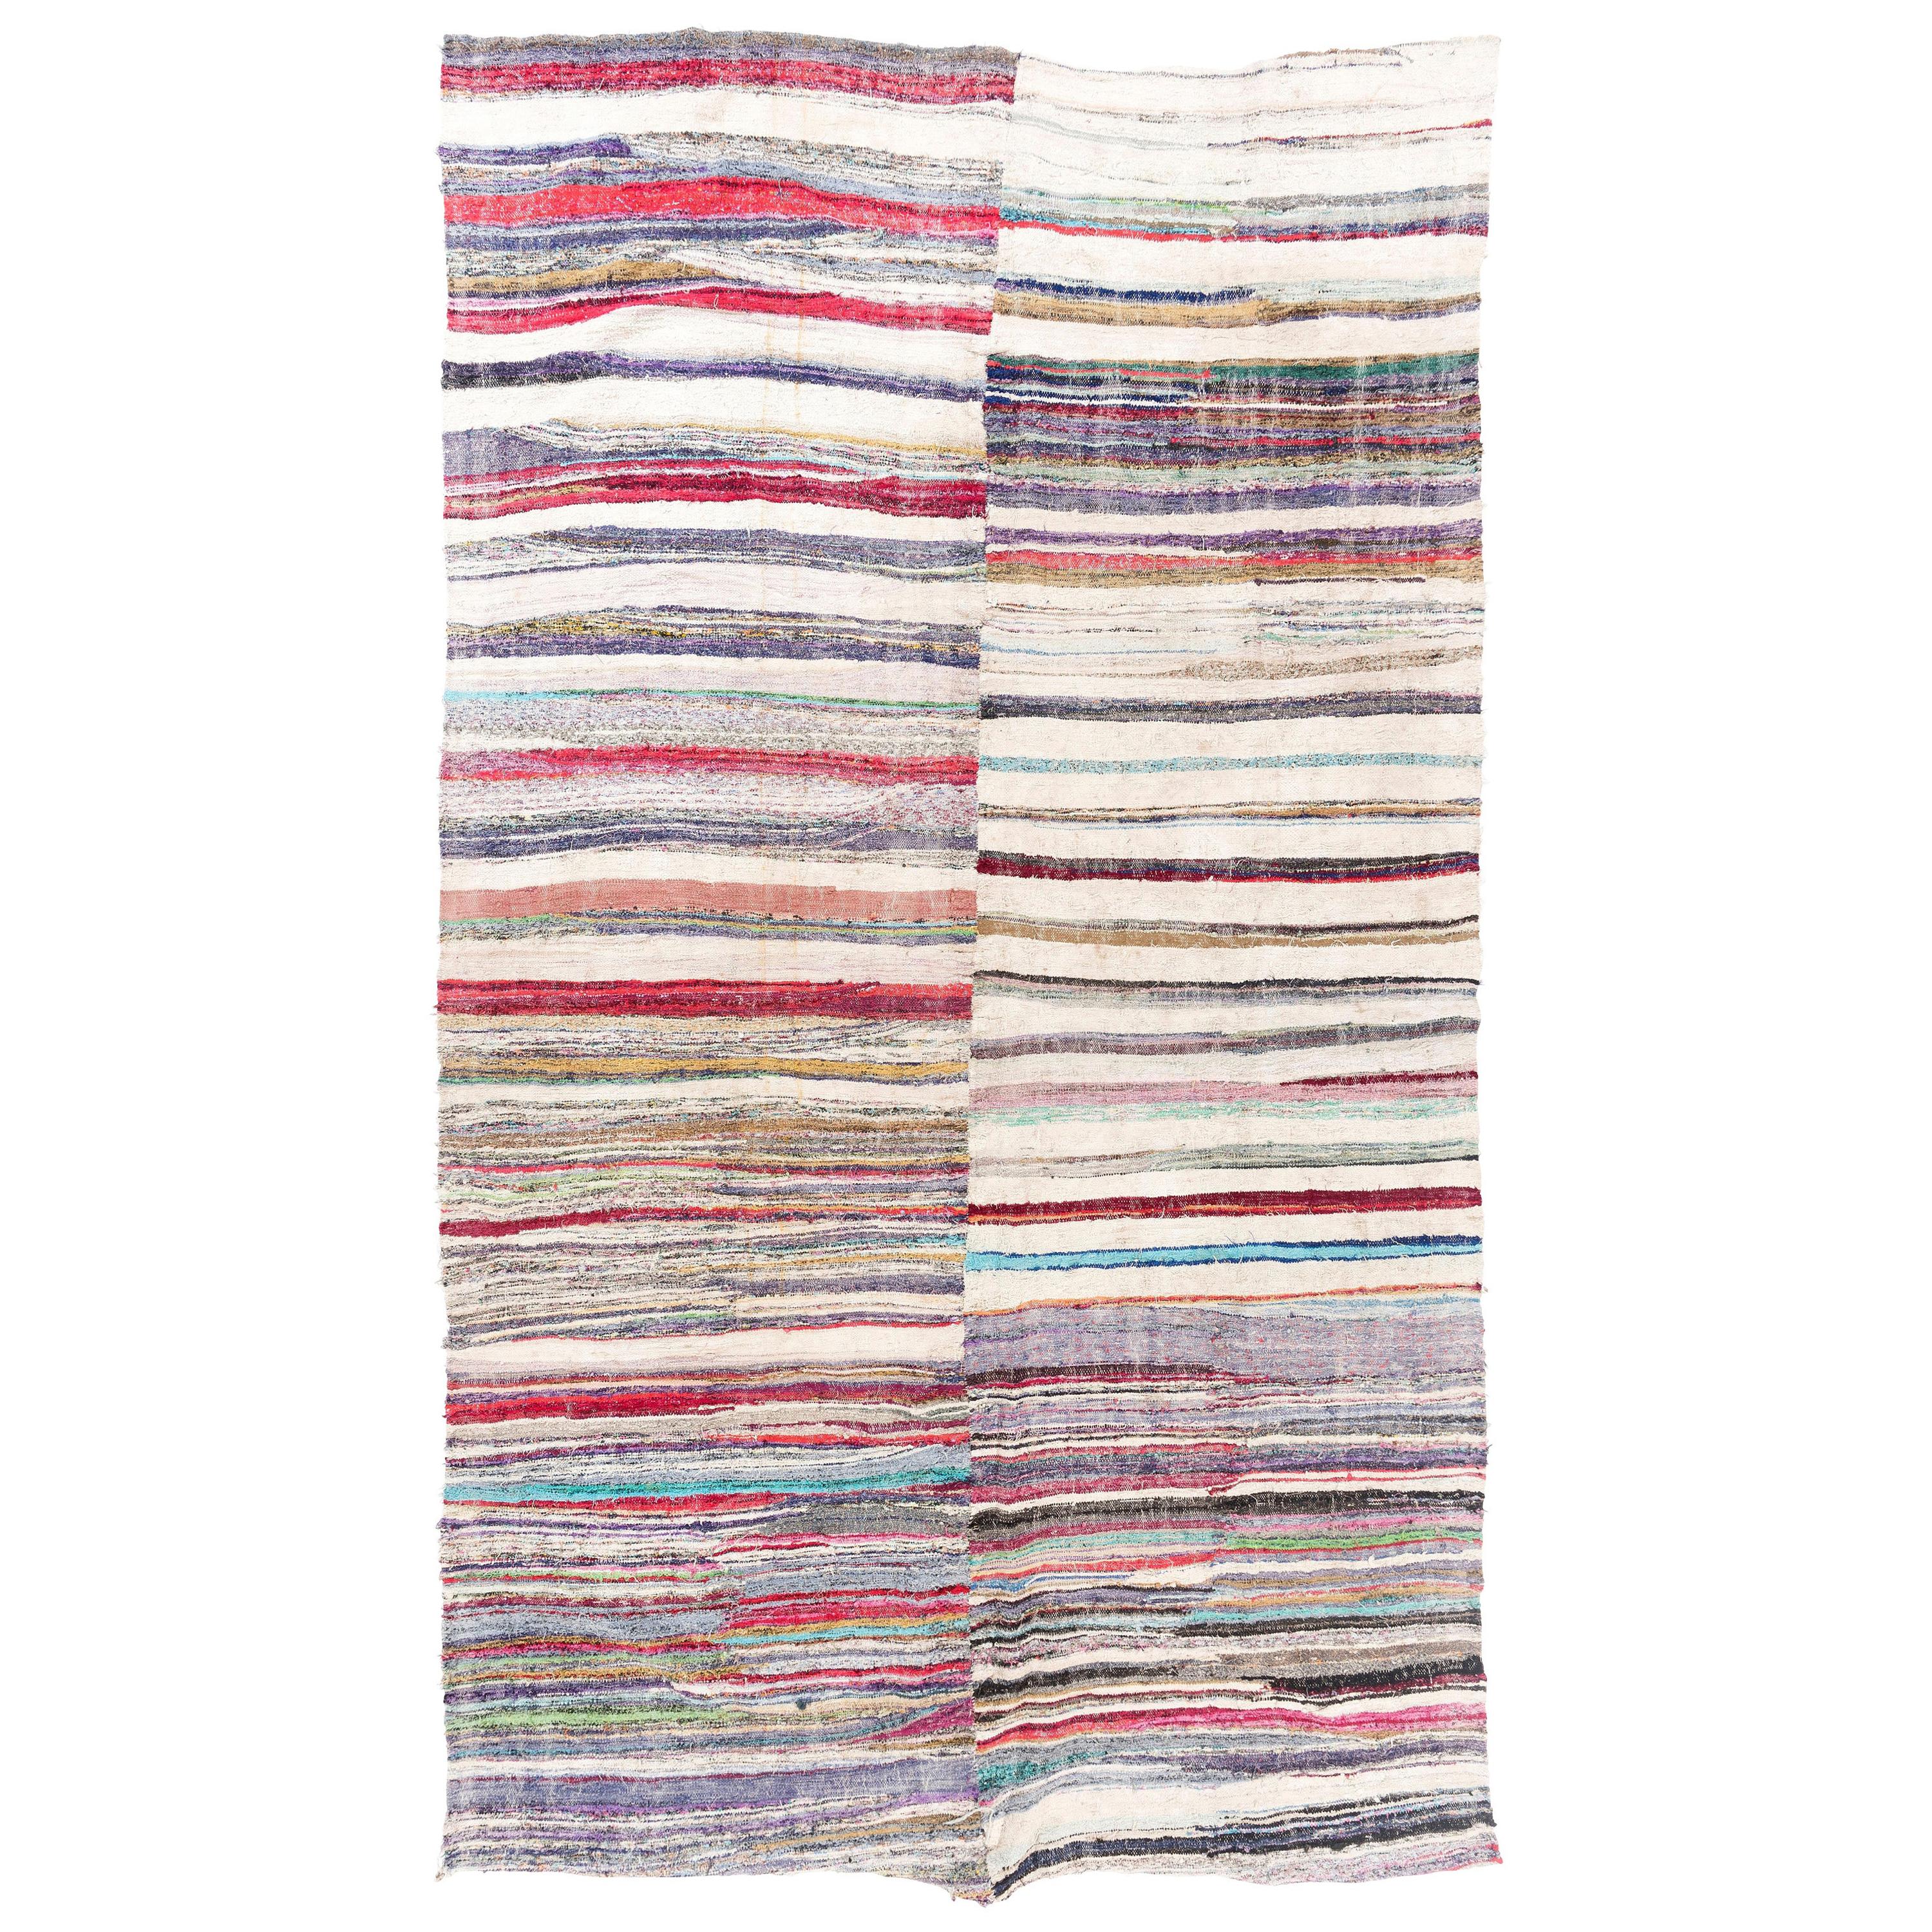 7.4x12.7 Ft Vintage gestreifter Rag-Teppich aus Baumwolle mit Muster. Flachgewebter Kelim-Teppich